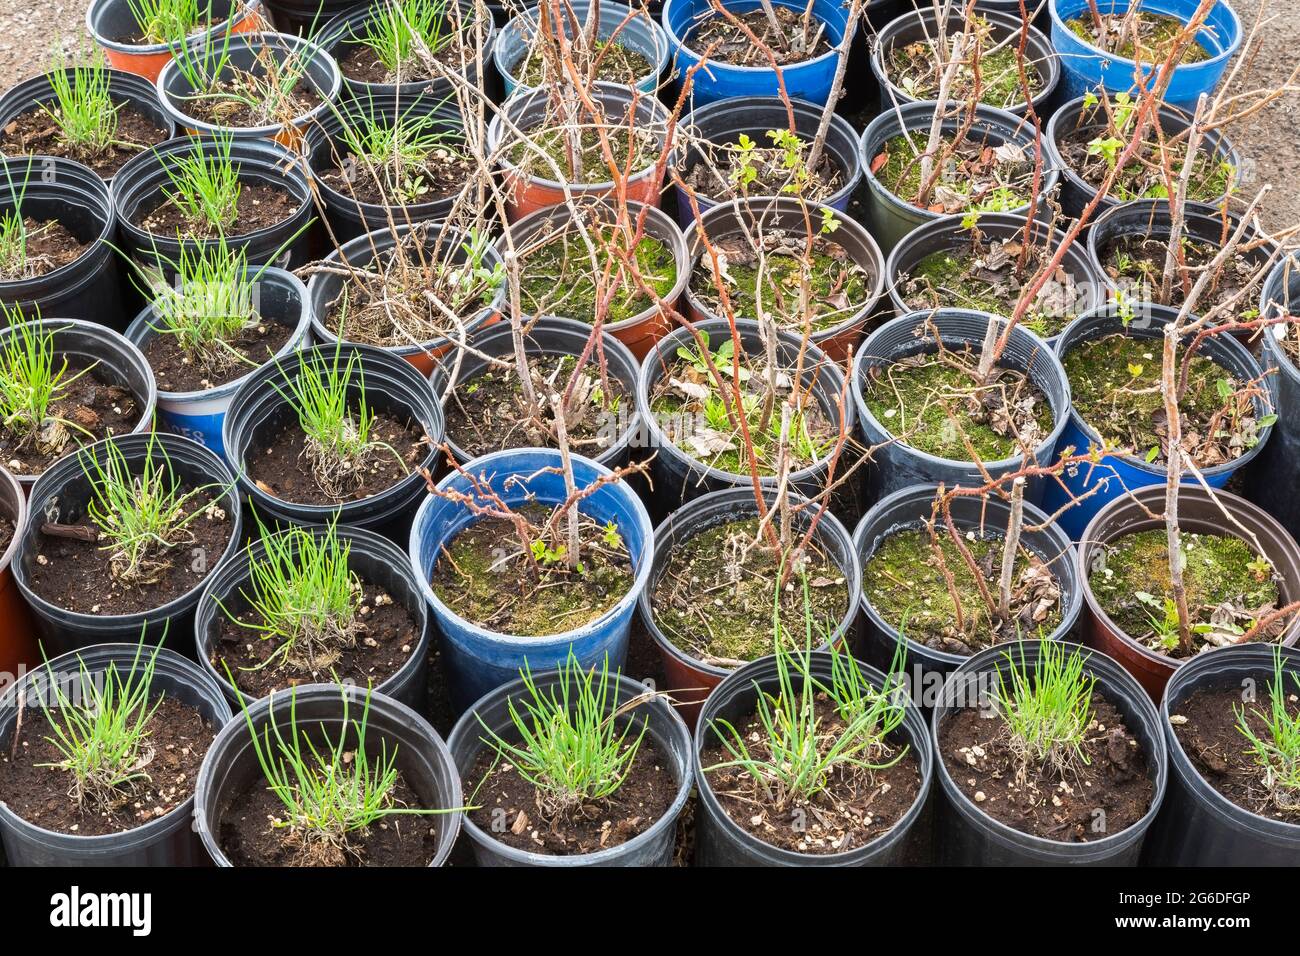 Allium cesp - plantes herbacées et arbustes à tiges ligneuses poussant dans des conteneurs à l'extérieur Banque D'Images